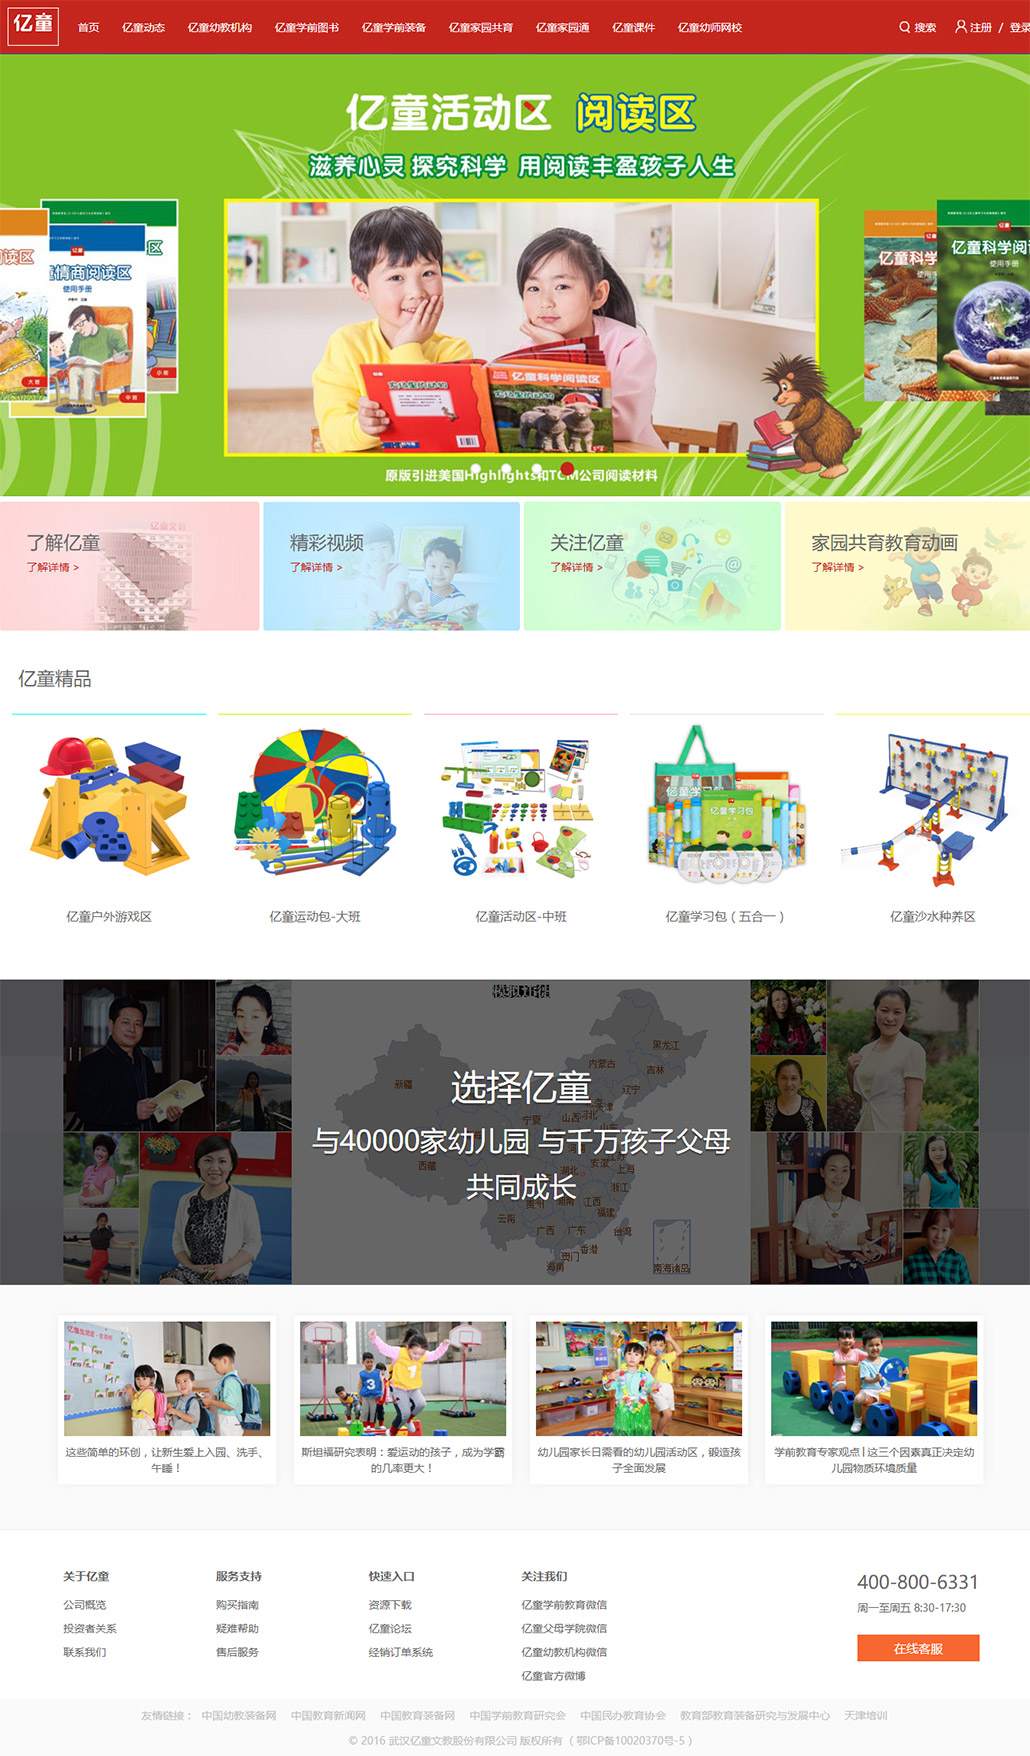 亿童官方网站---中国幼教行业的整体服务机构.jpg